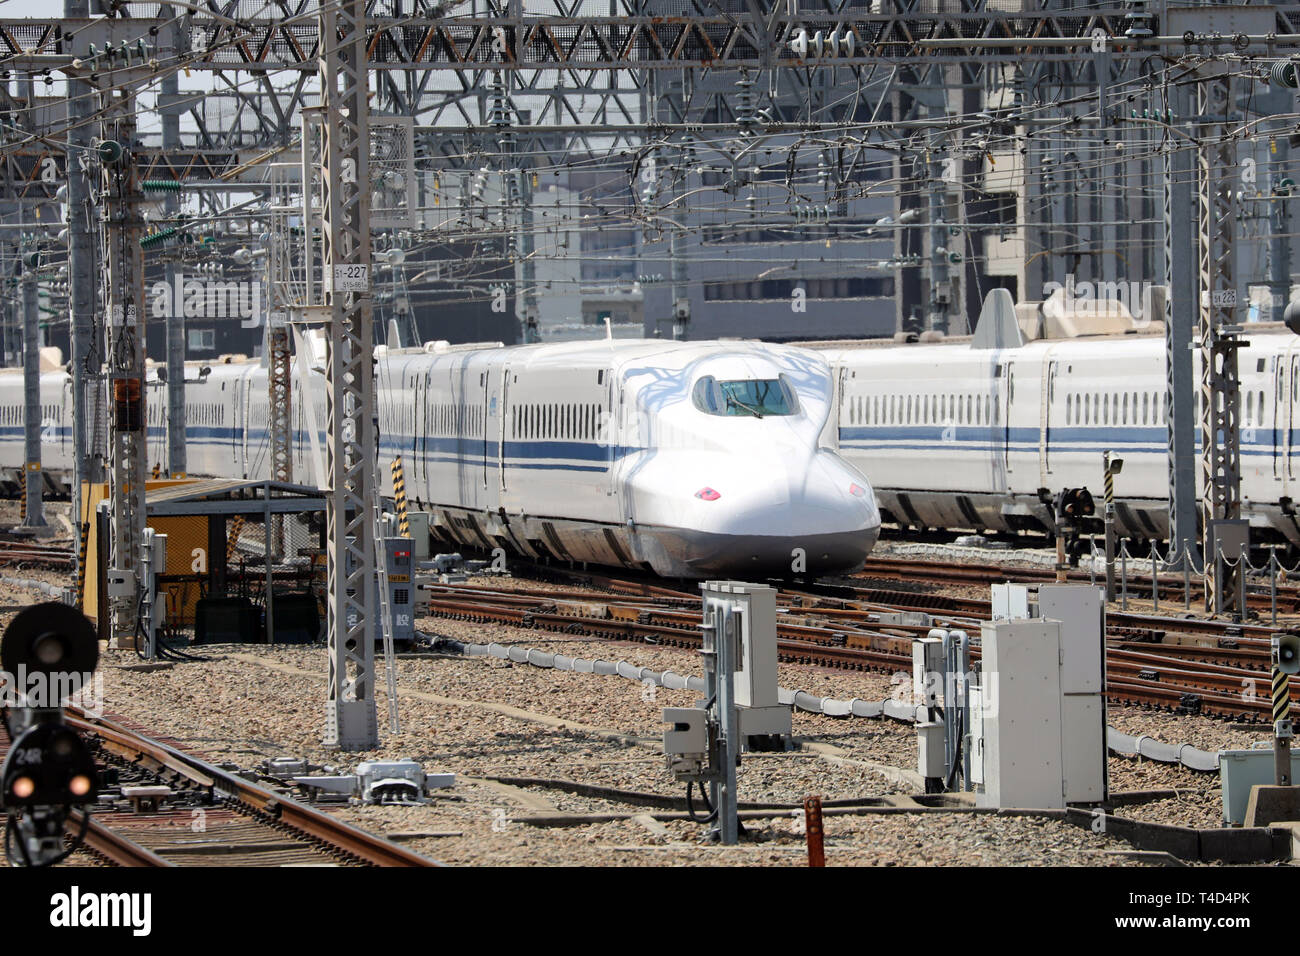 Shinkansen high speed train at Shin-Osaka station, Osaka, Japan Stock Photo